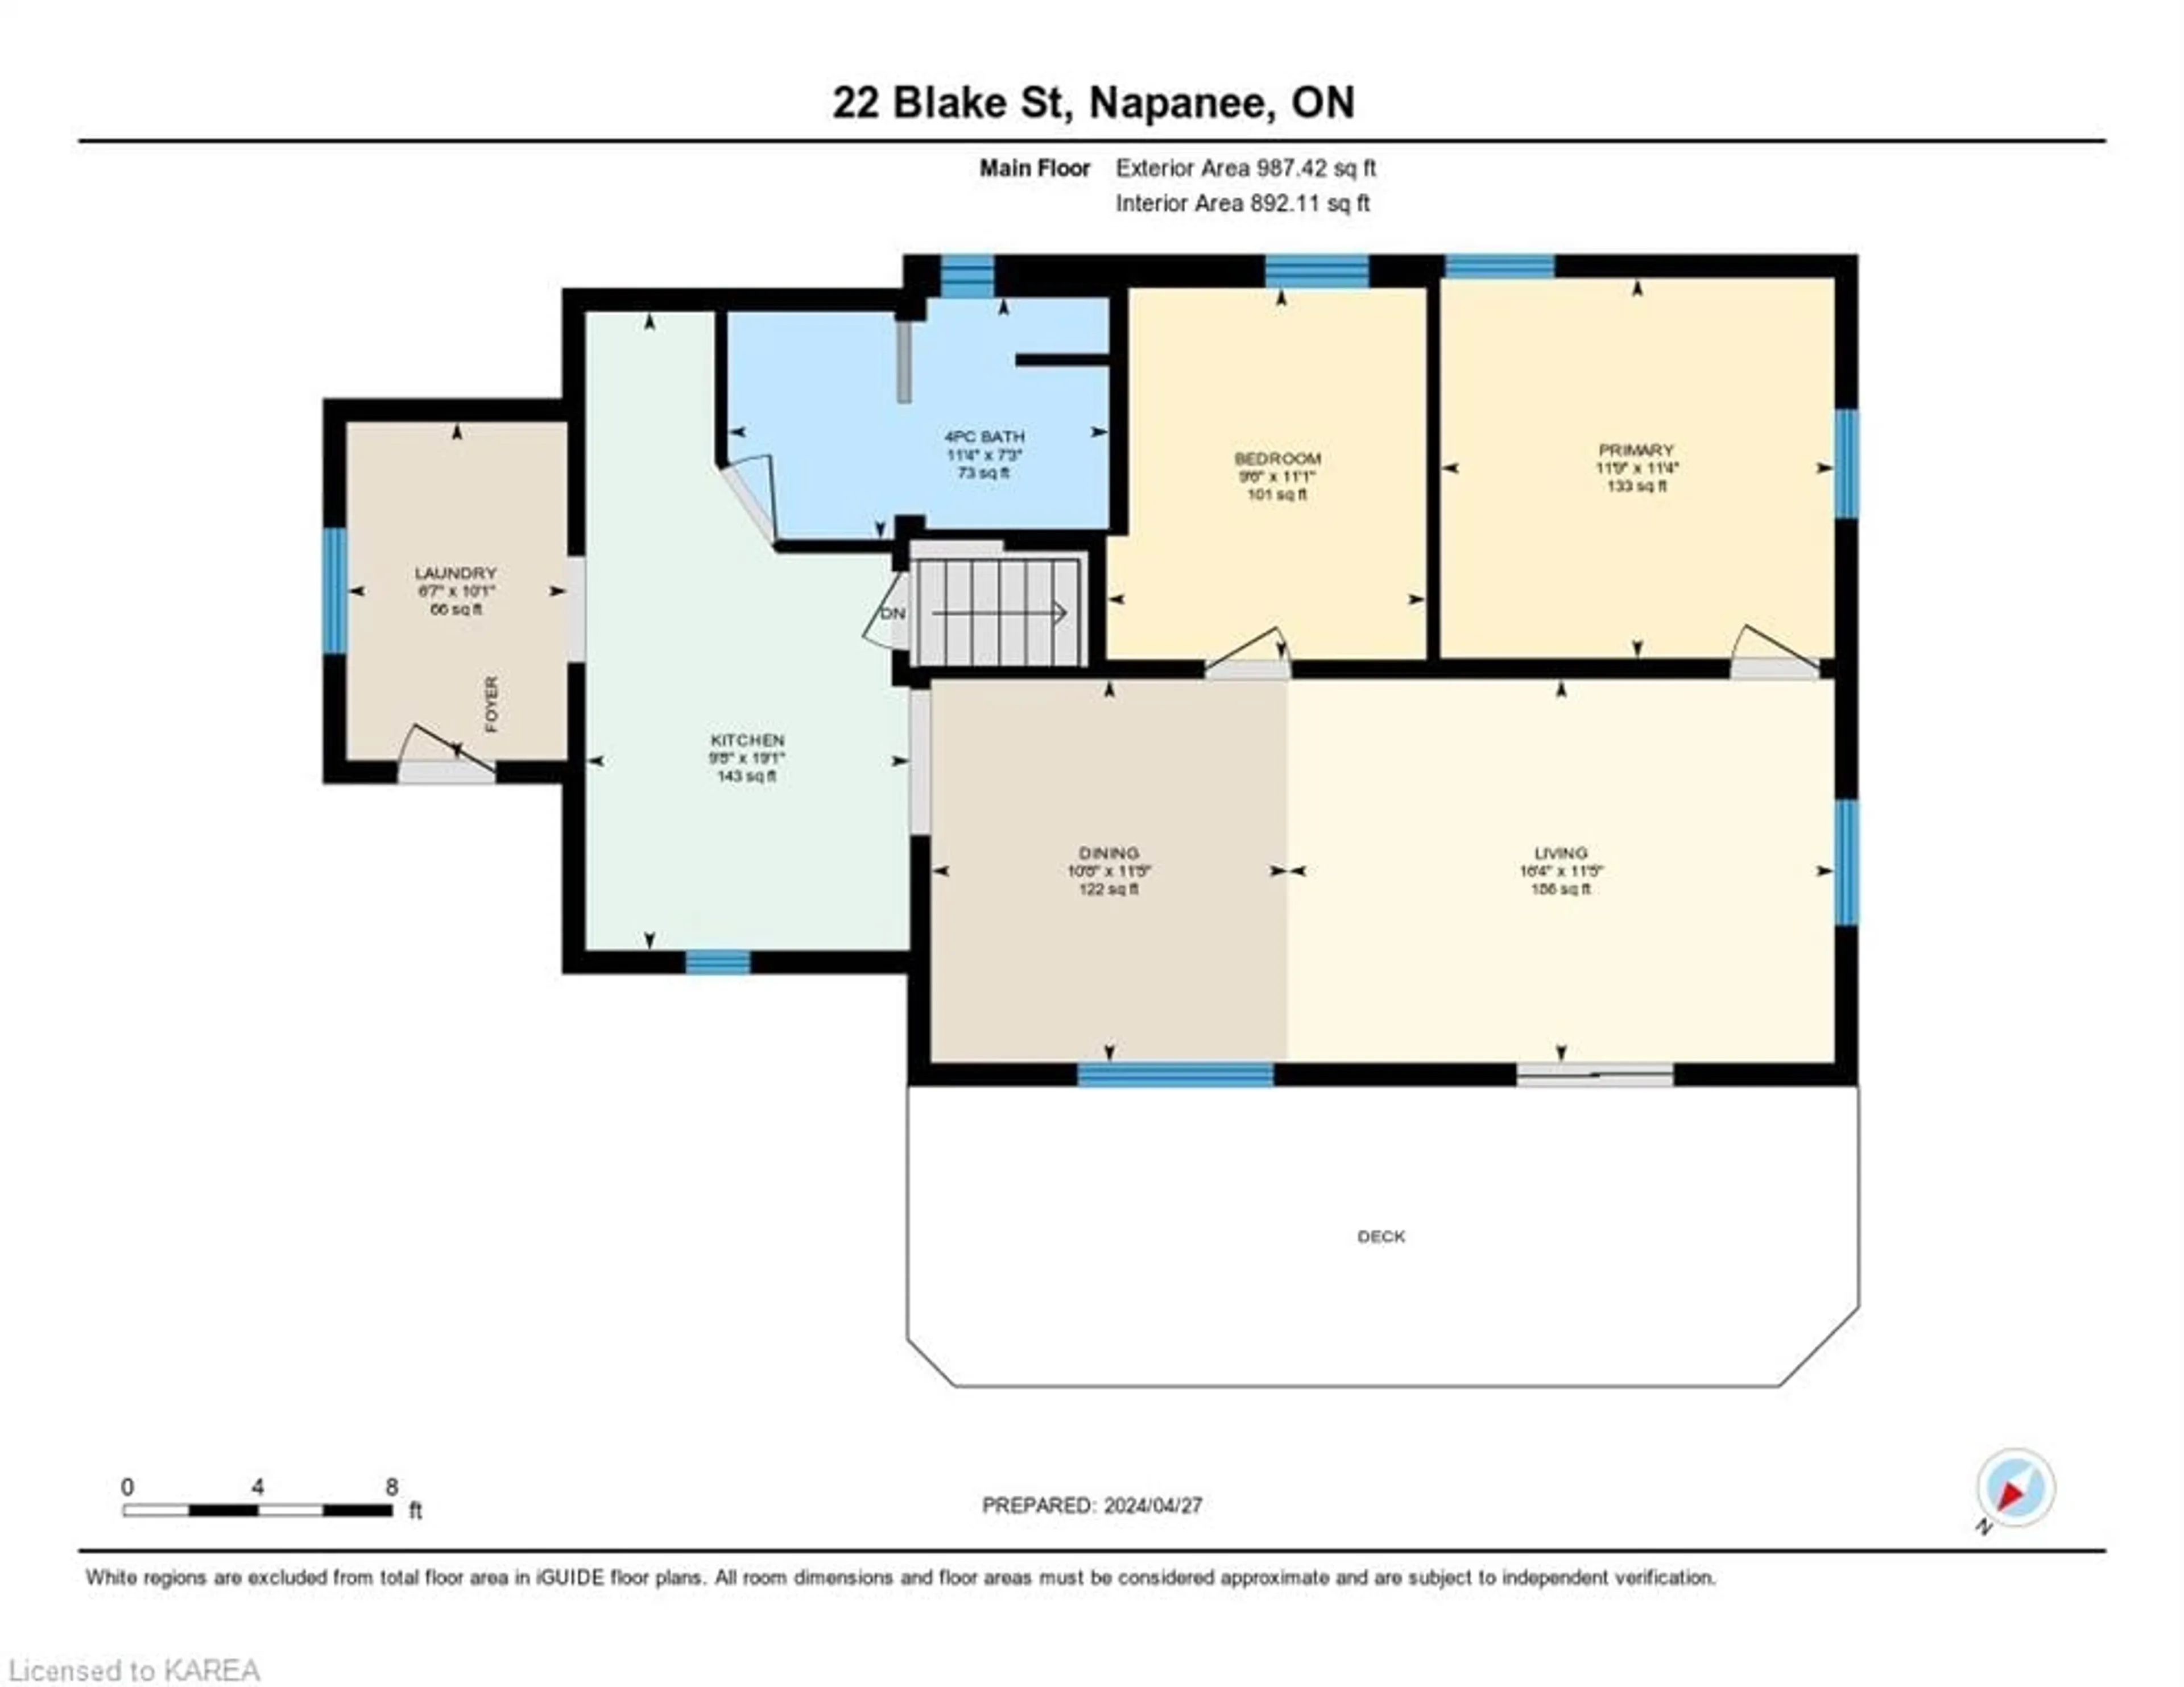 Floor plan for 22 Blake St, Napanee Ontario K7R 3E3